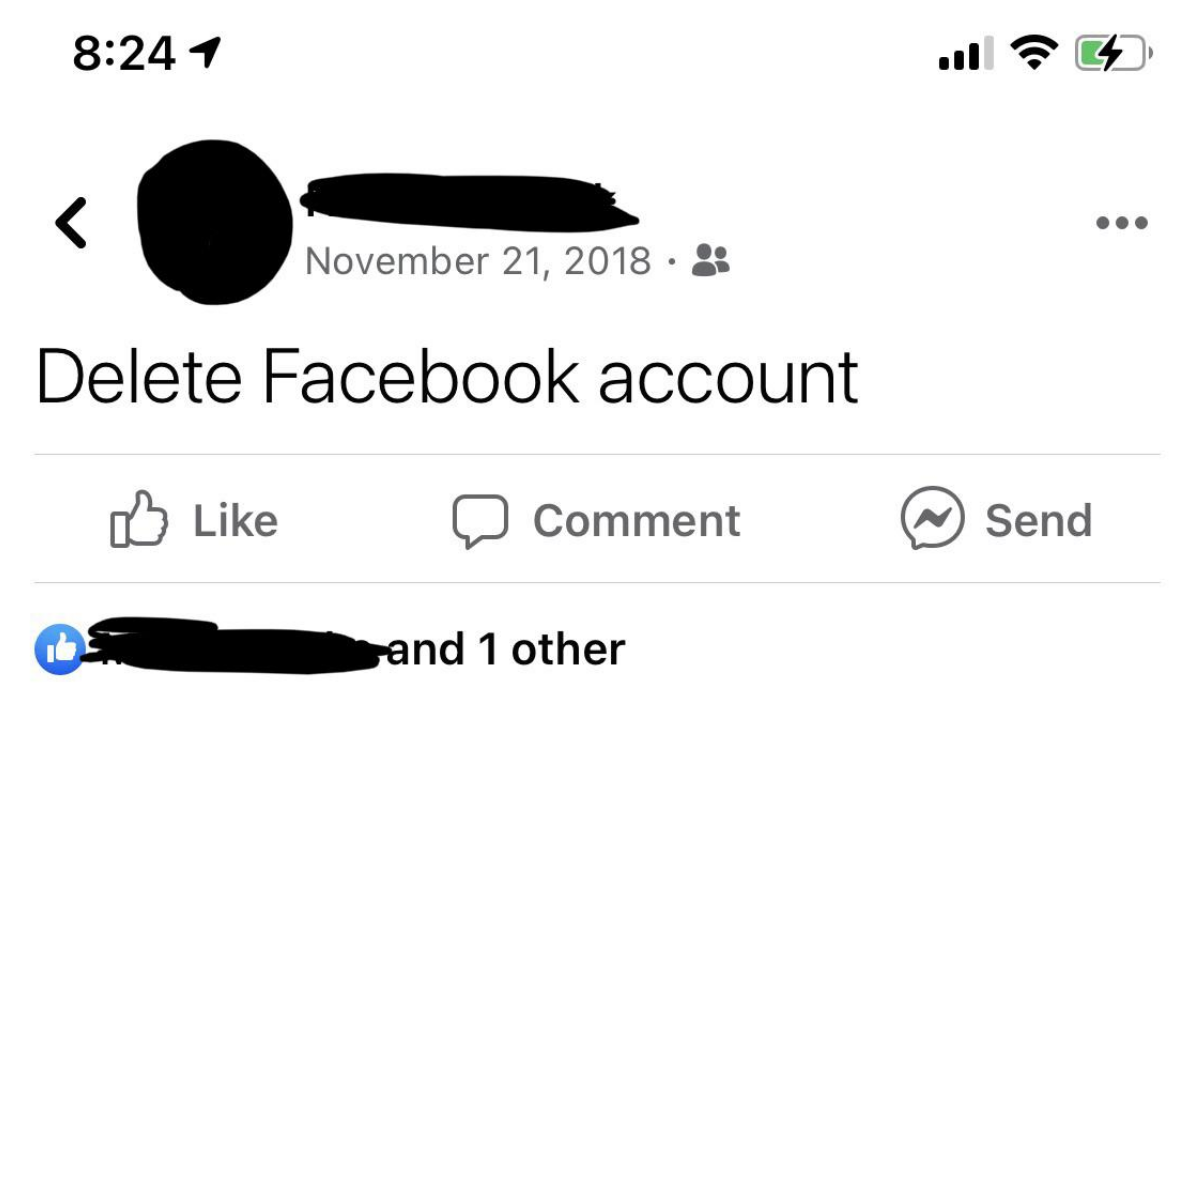 Grandpa&#x27;s Facebook status says Delete Facebook account